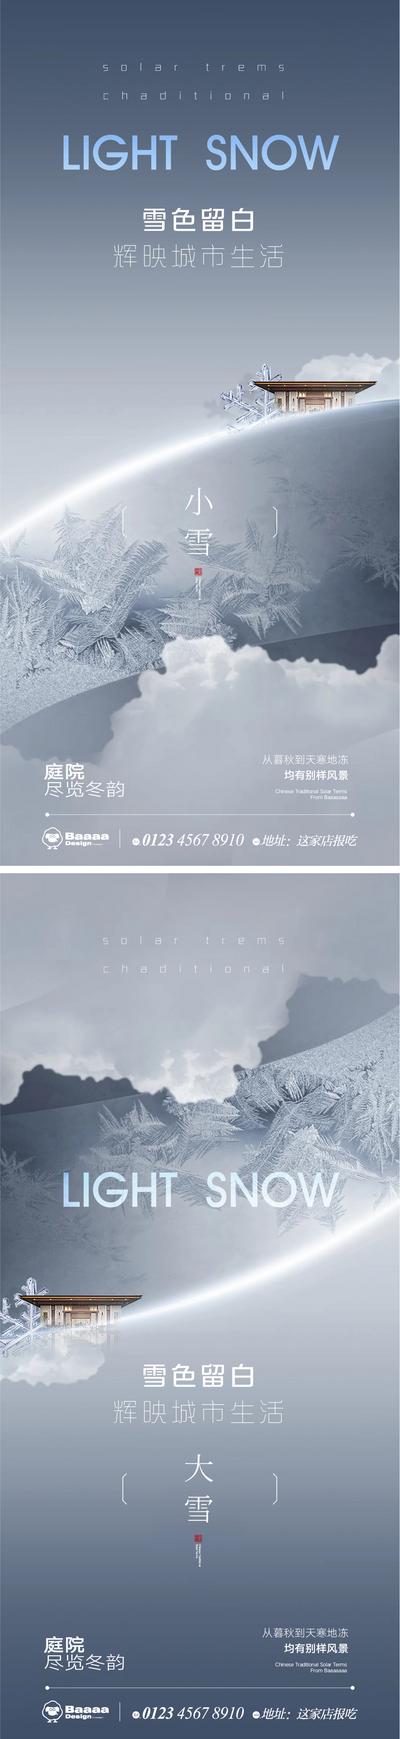 【南门网】广告 海报 节气 系列 商业 小雪 大雪 肌理 大气 建筑 圈层 商圈 刷屏